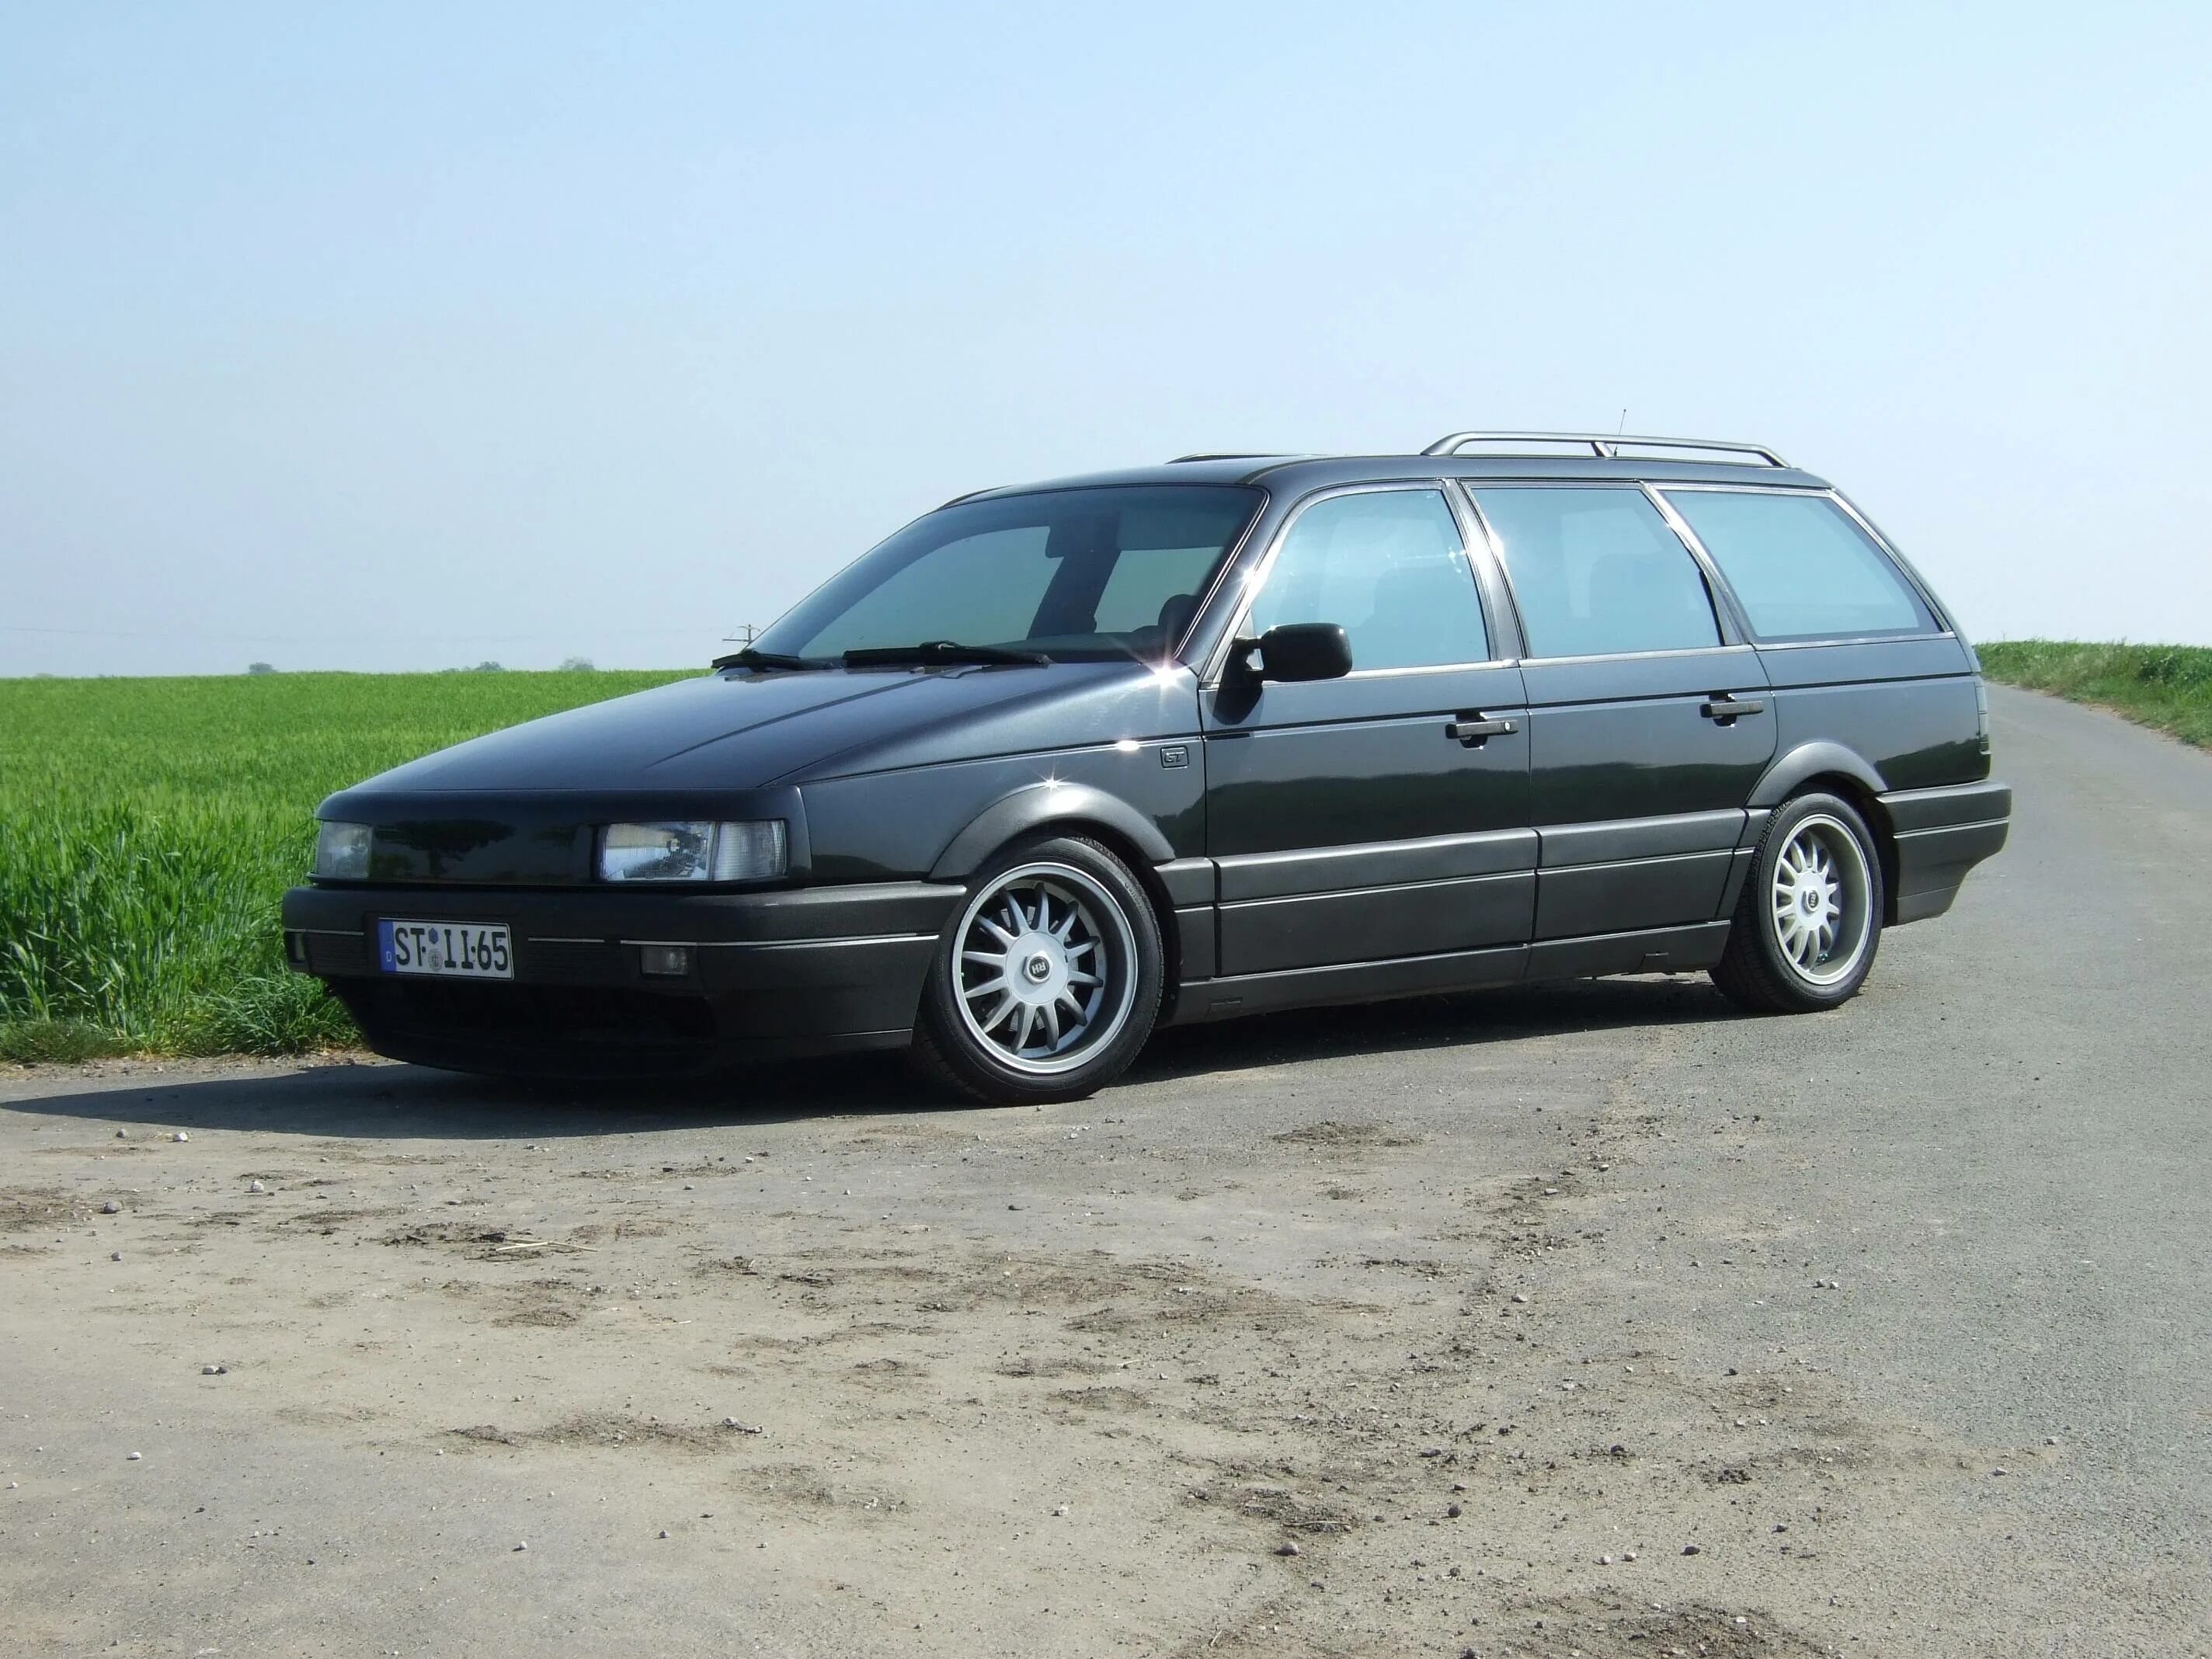 3 4 универсалы. Фольксваген Пассат б3 универсал. VW Passat b3 универсал чёрный. Фольксваген Пассат б3 б4. Volkswagen Passat b3 1990 универсал.